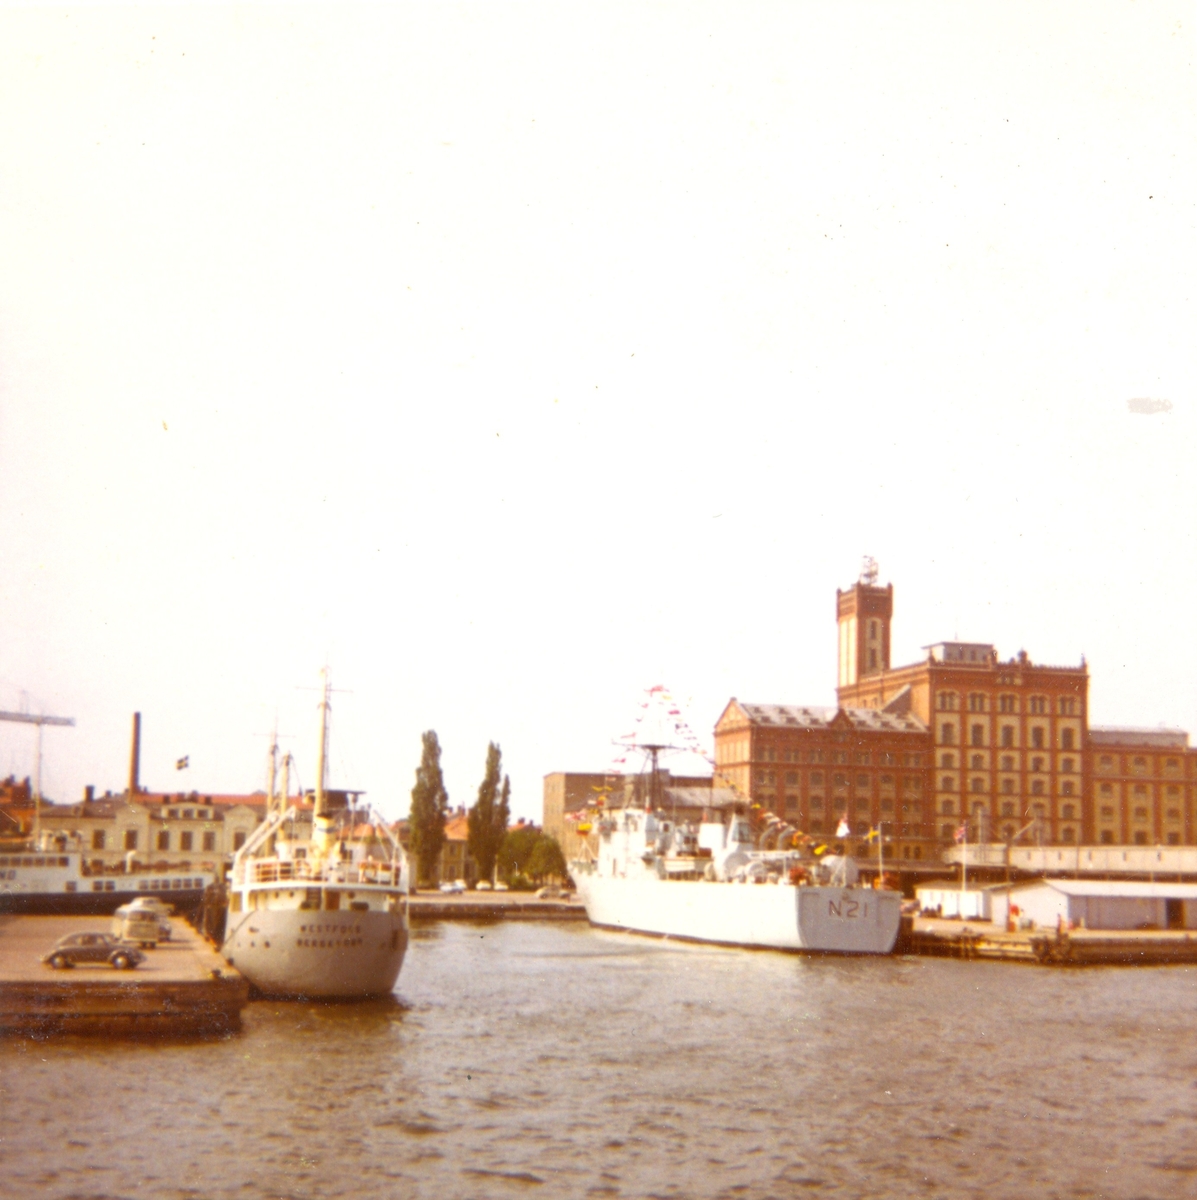 Den brittiske minläggaren HMS Abdiel (N21), byggt 1967 i Tullhamnen i Kalmar,